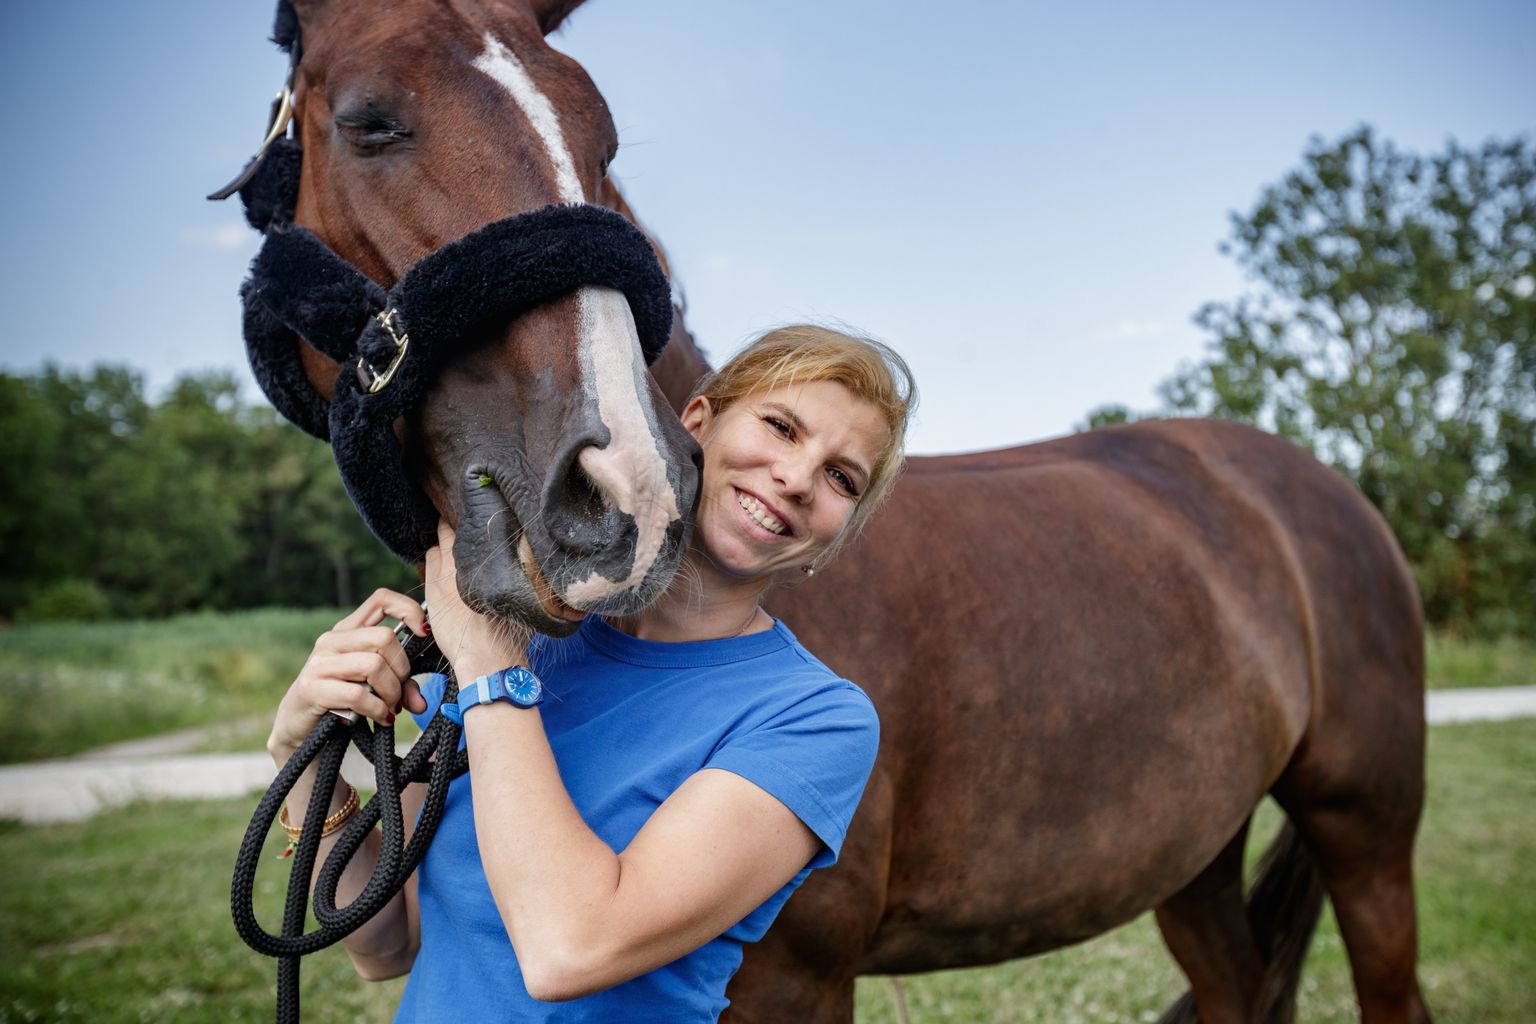 Dina Ellermann ja tema hobune Donna Anna tegid Tokyo olümpiale jõudmisega Eesti ratsaspordi ajalugu. Varem pole Eesti lipu all olümpial ühtegi ratsanikku nähtud.